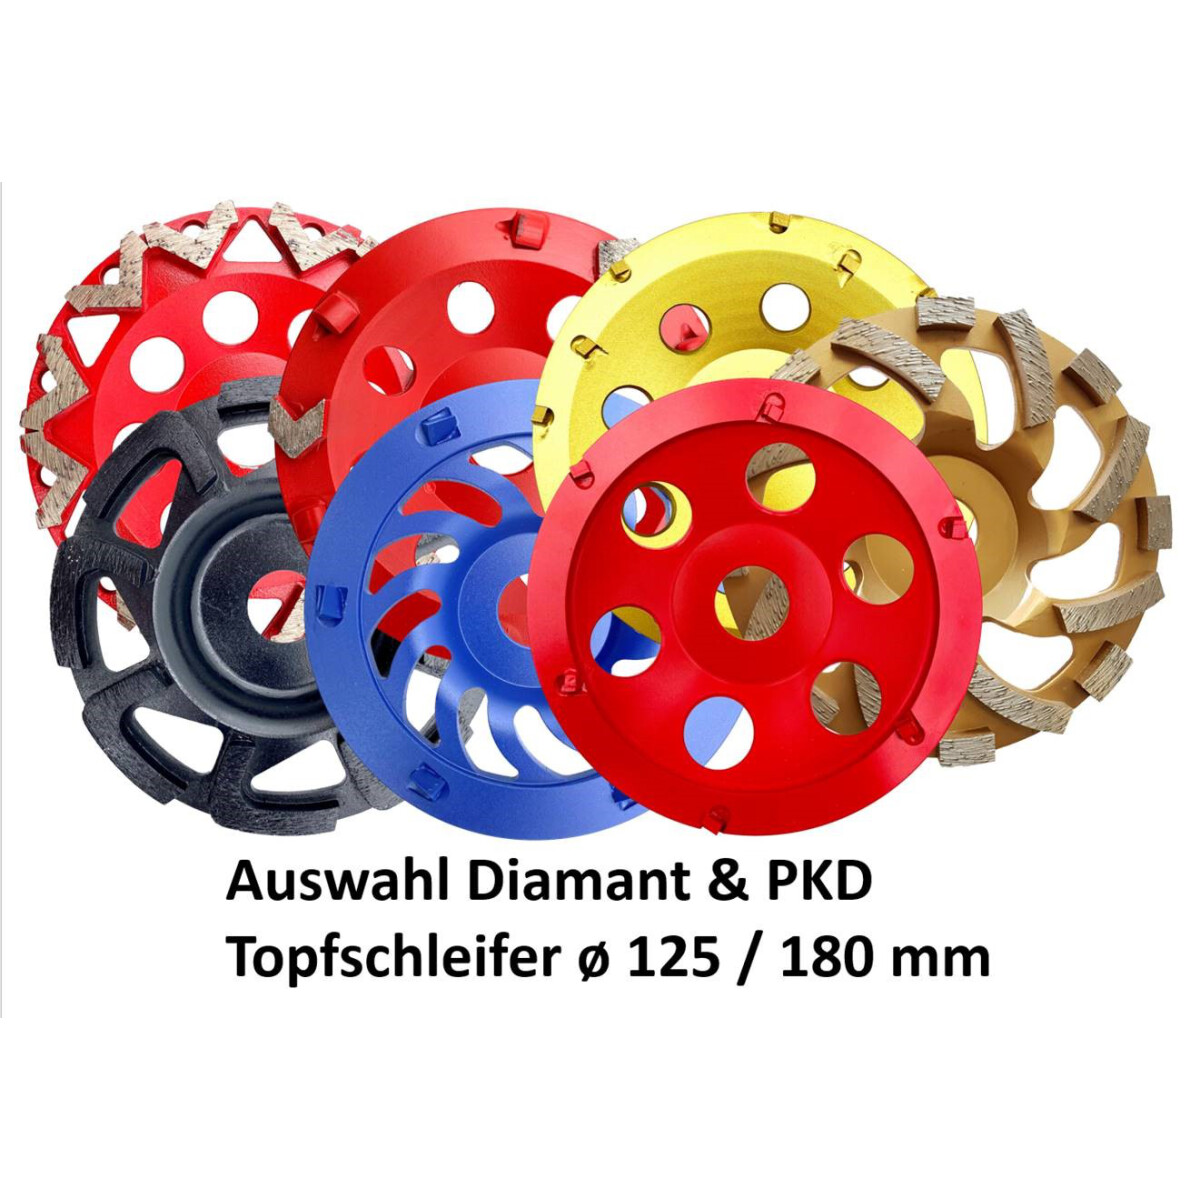 Bosch Diamant Schleiftopf Schleifteller 125 mm für Winkelschleifer 2608201235 